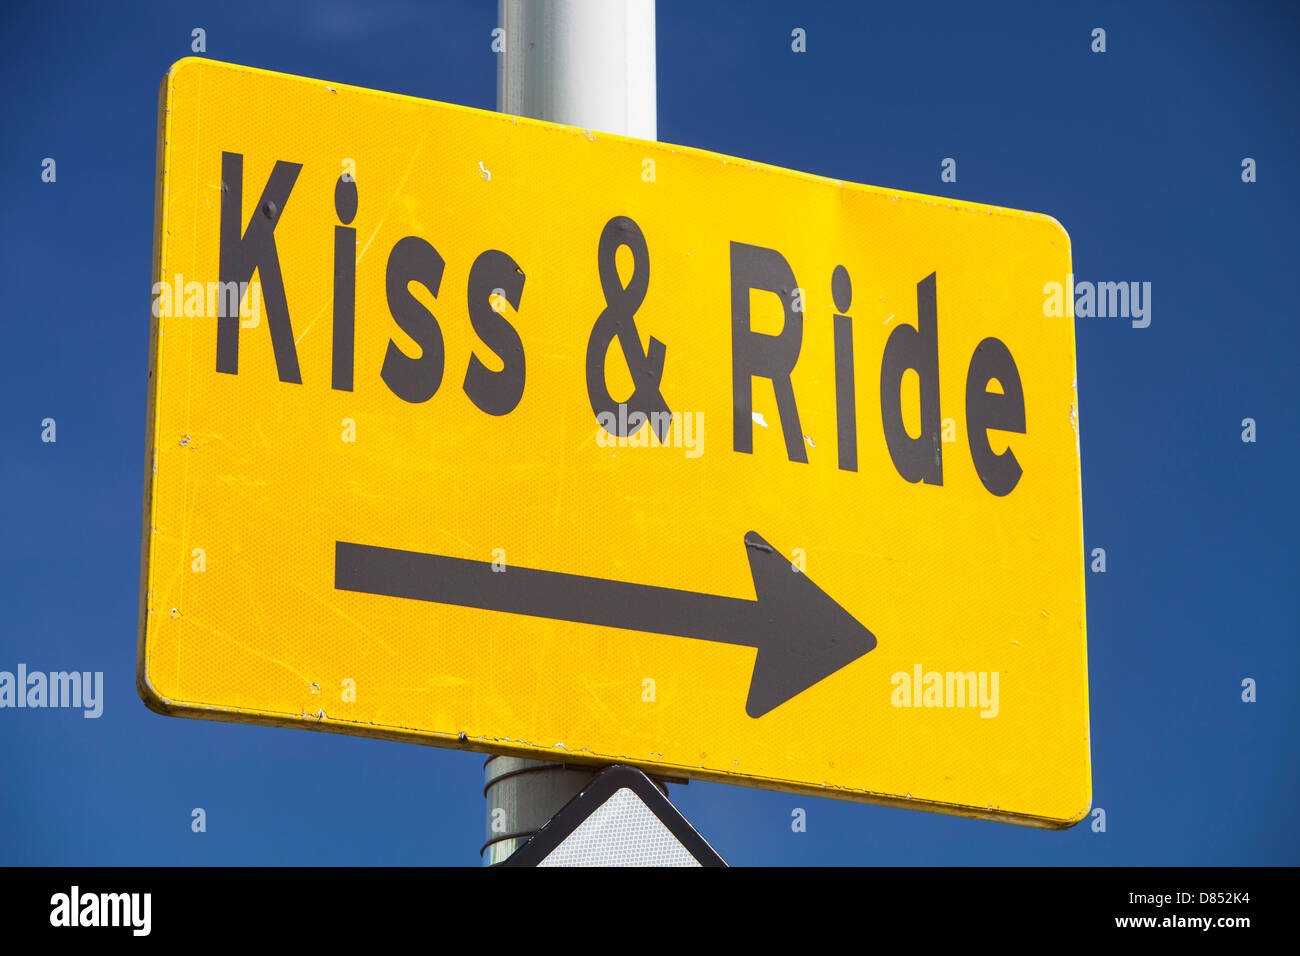 Un bacio e ride accedi Zaanstadt, Paesi Bassi. Foto Stock